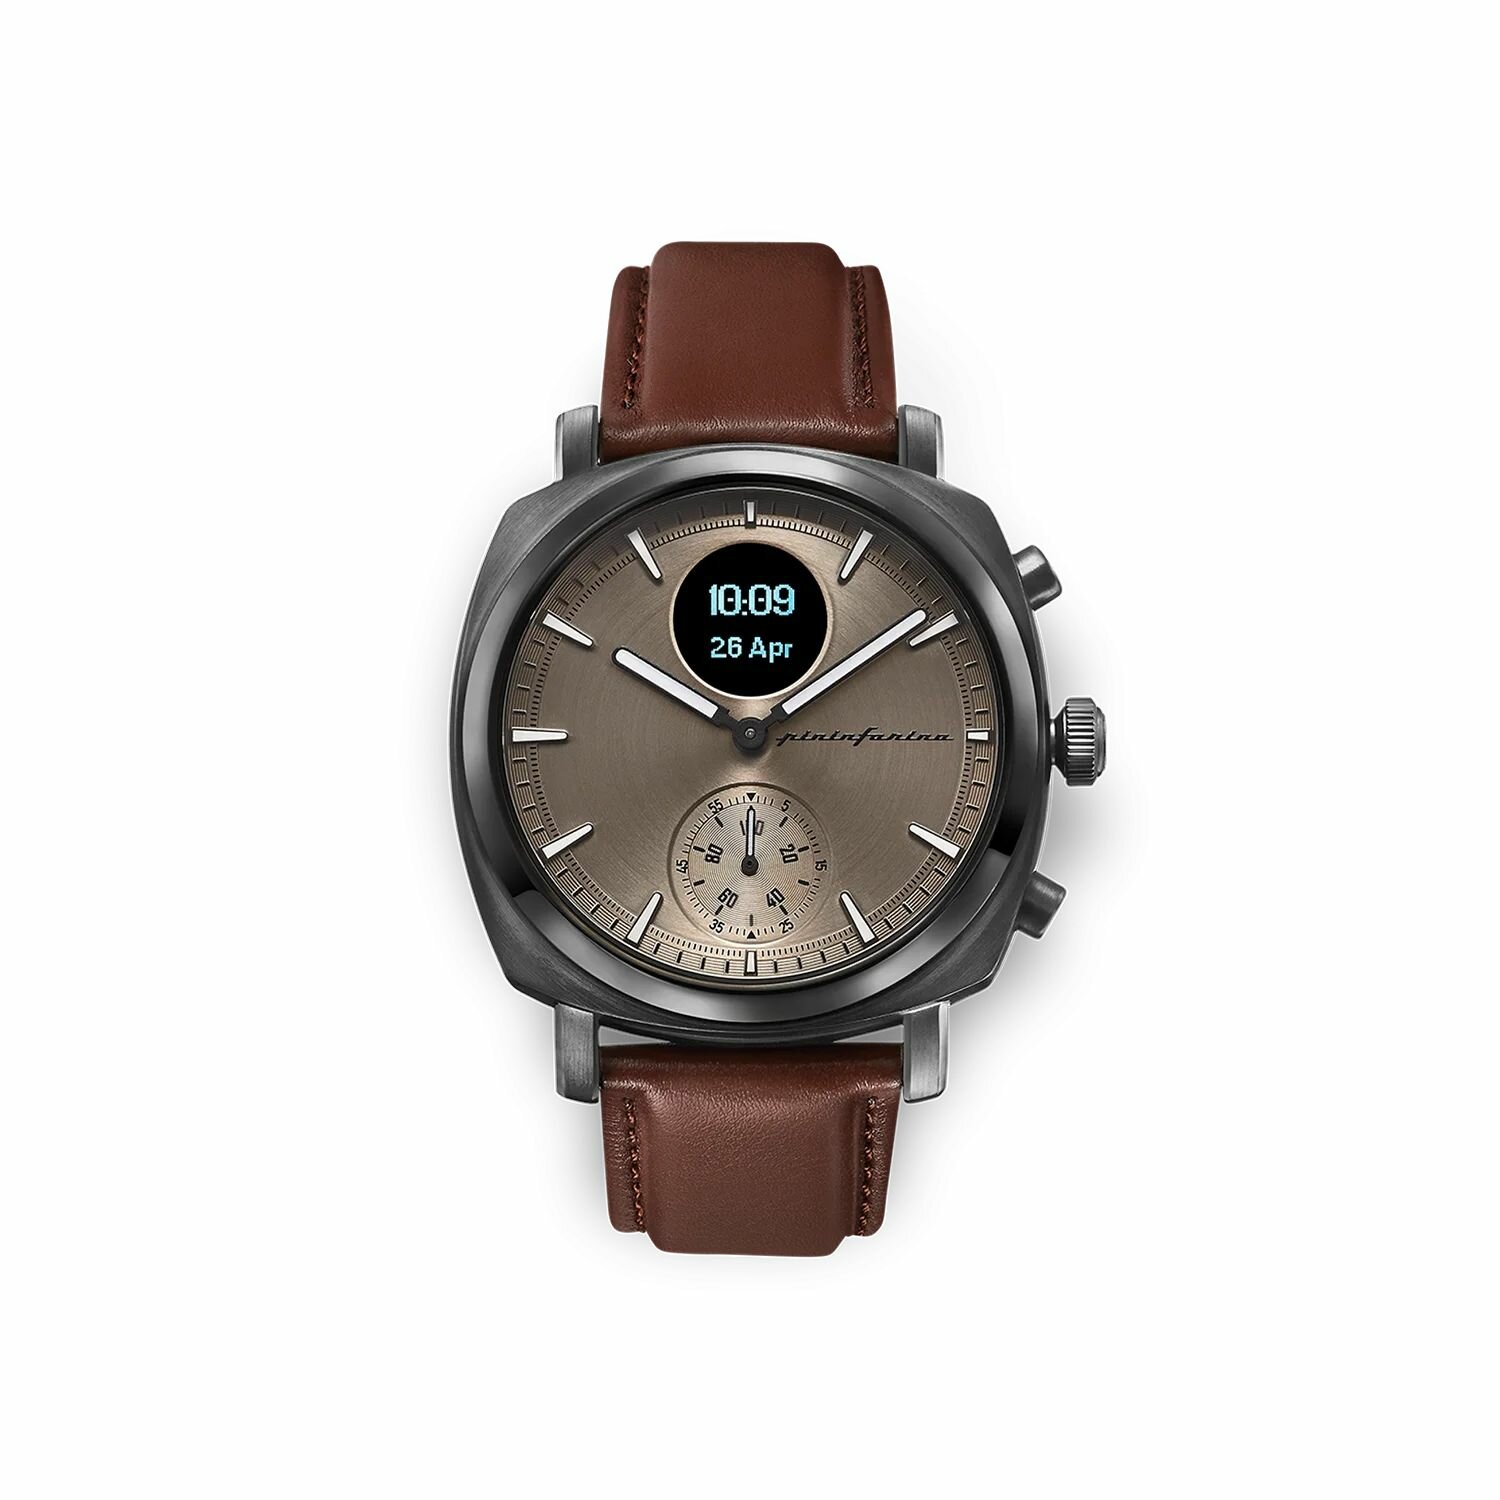 Гибридные умные часы Pininfarina Senso Hybrid (44мм) Темно-серые, темно-коричневый ремешок